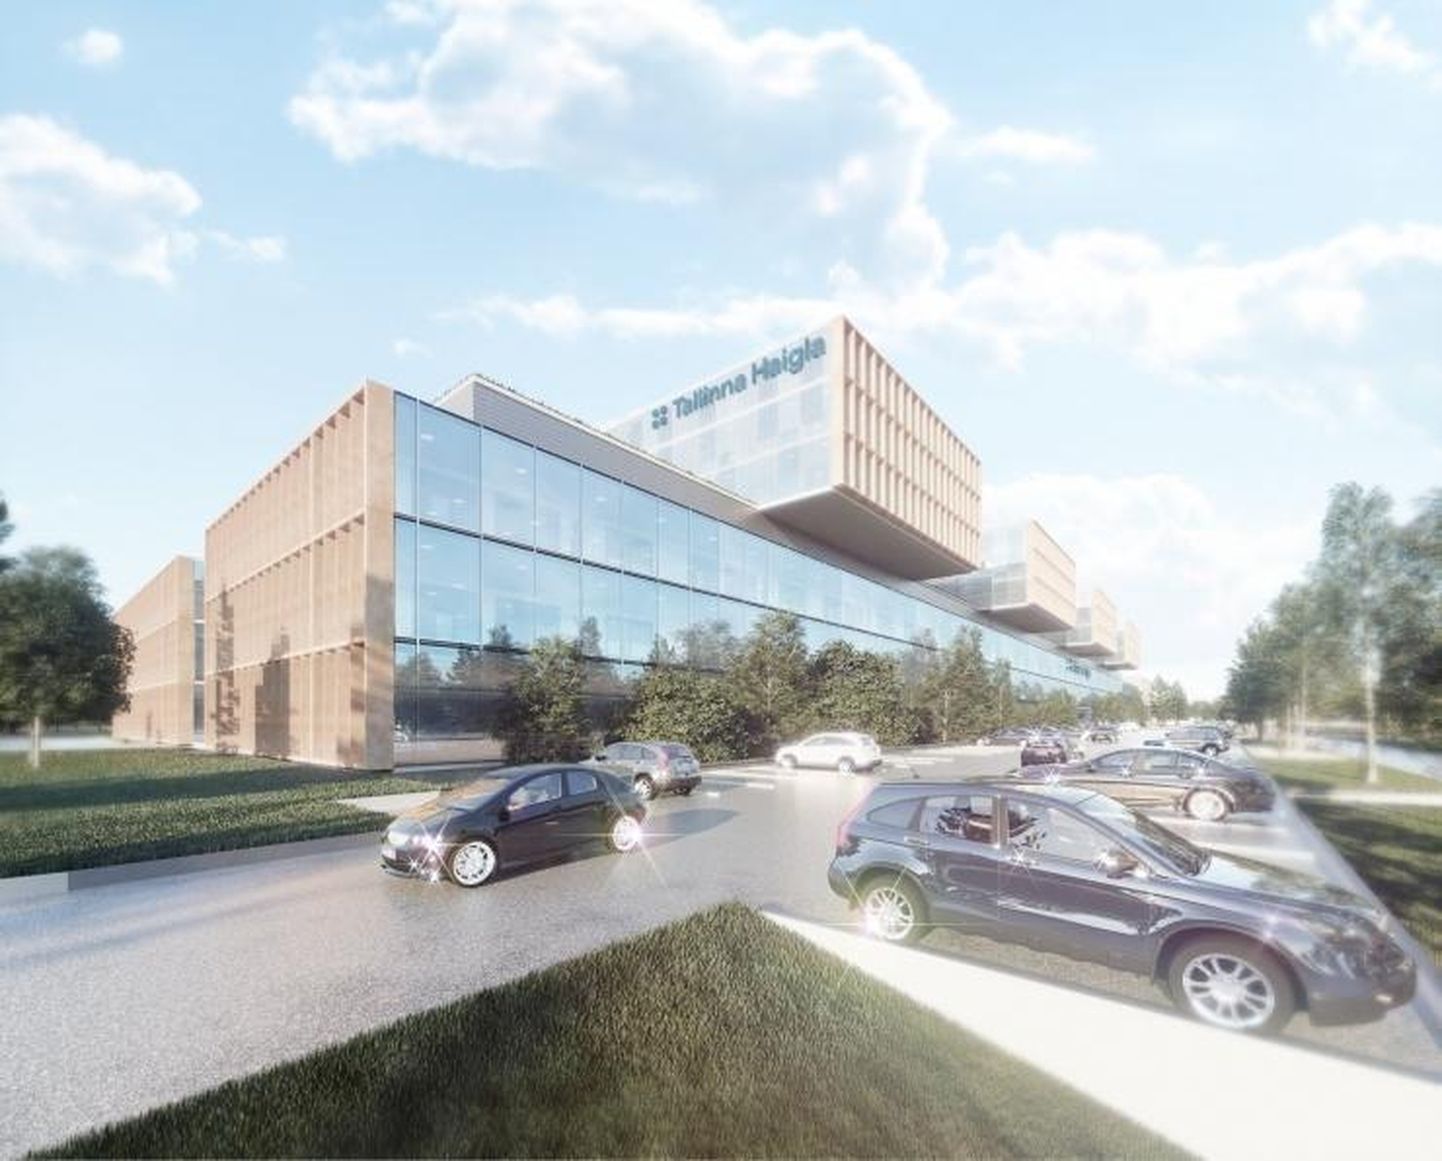 Tulevane Tallinna haigla peaks olema järgnevate aastate suurim kinnisvarainvesteering.  